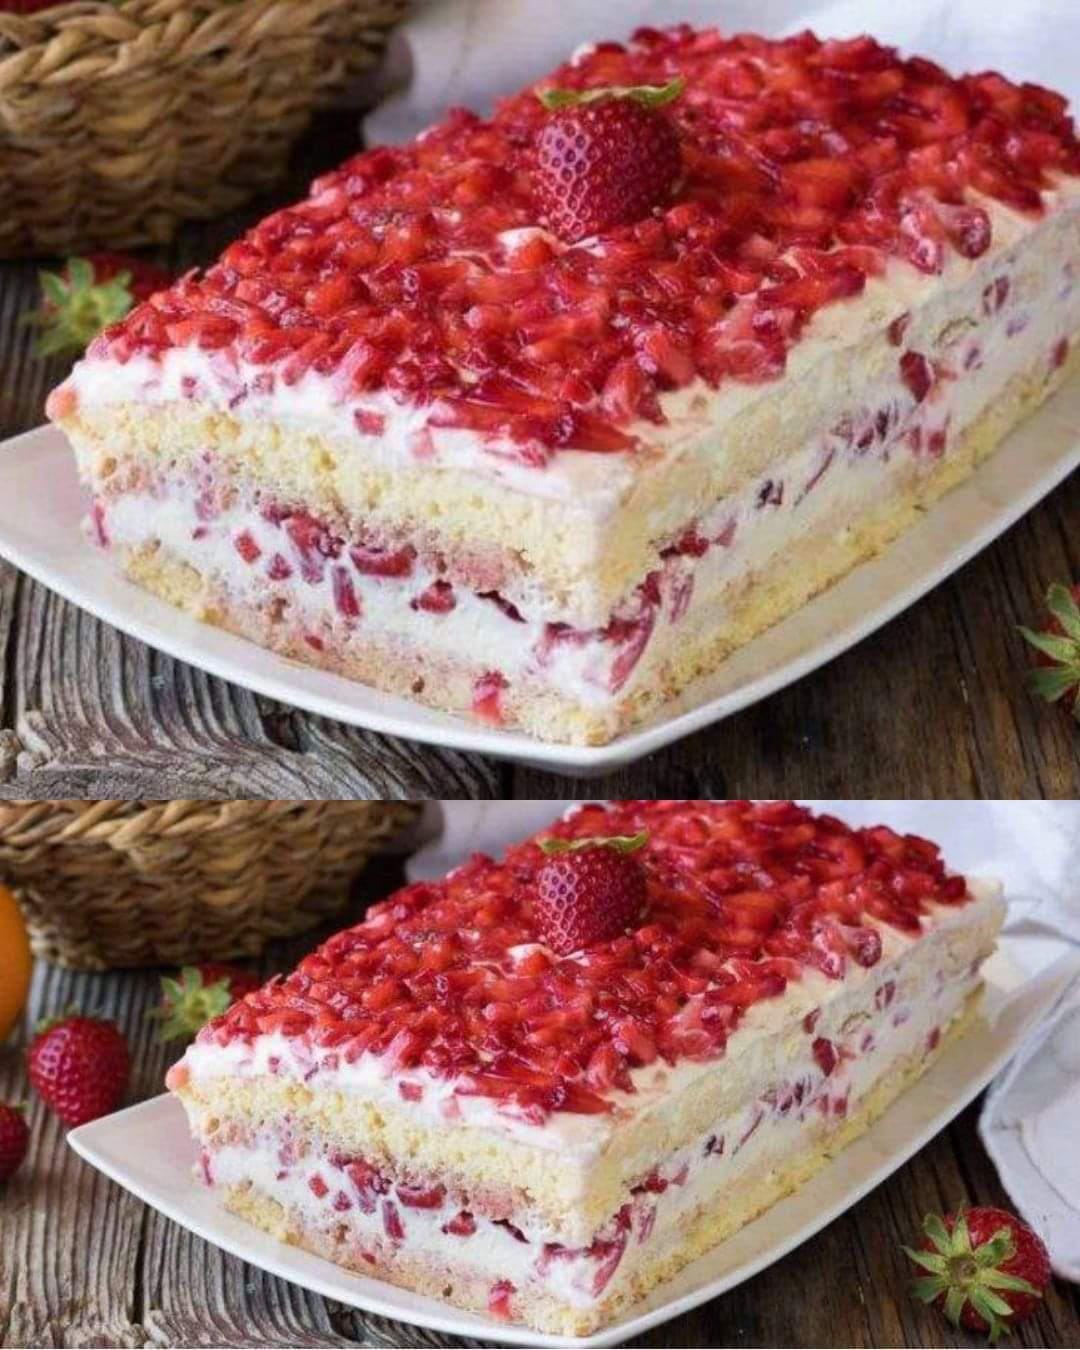 Strawberry and mascarpone cake – Grandma's